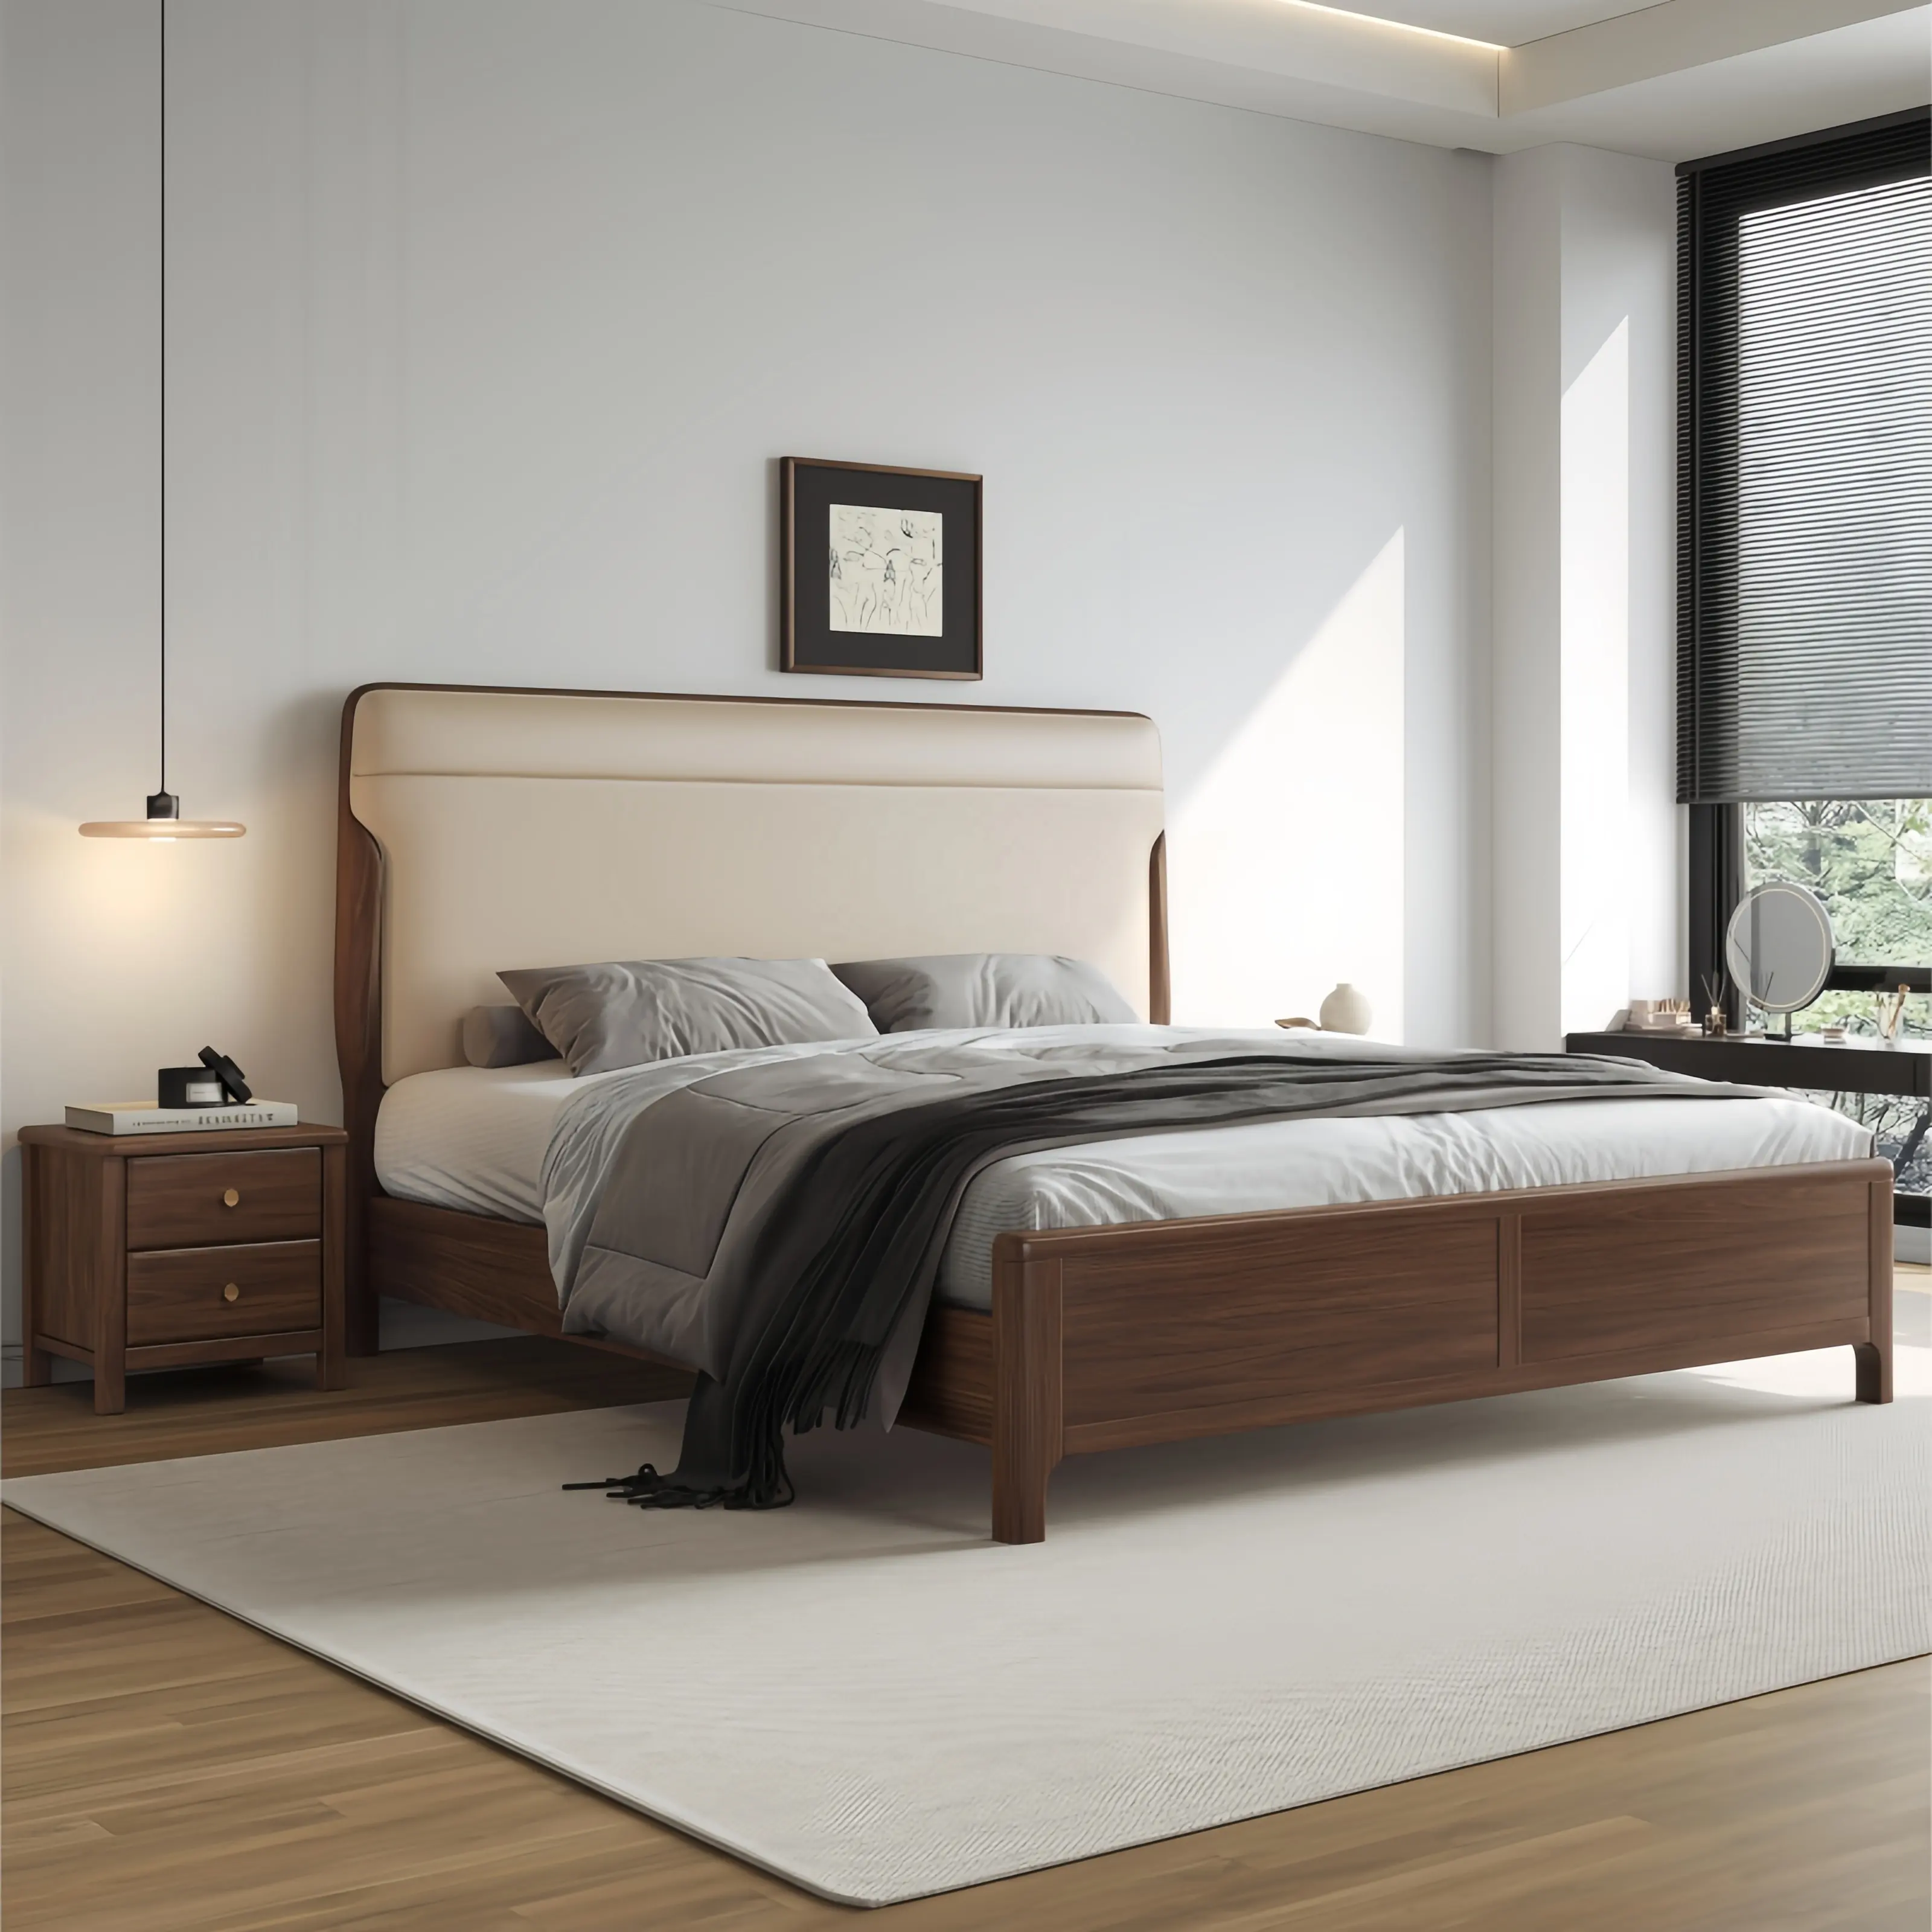 Moderno elegante camera da letto in legno Set di mobili per appartamento e ville di lusso popolare King Size doppio letto in legno con ripostiglio